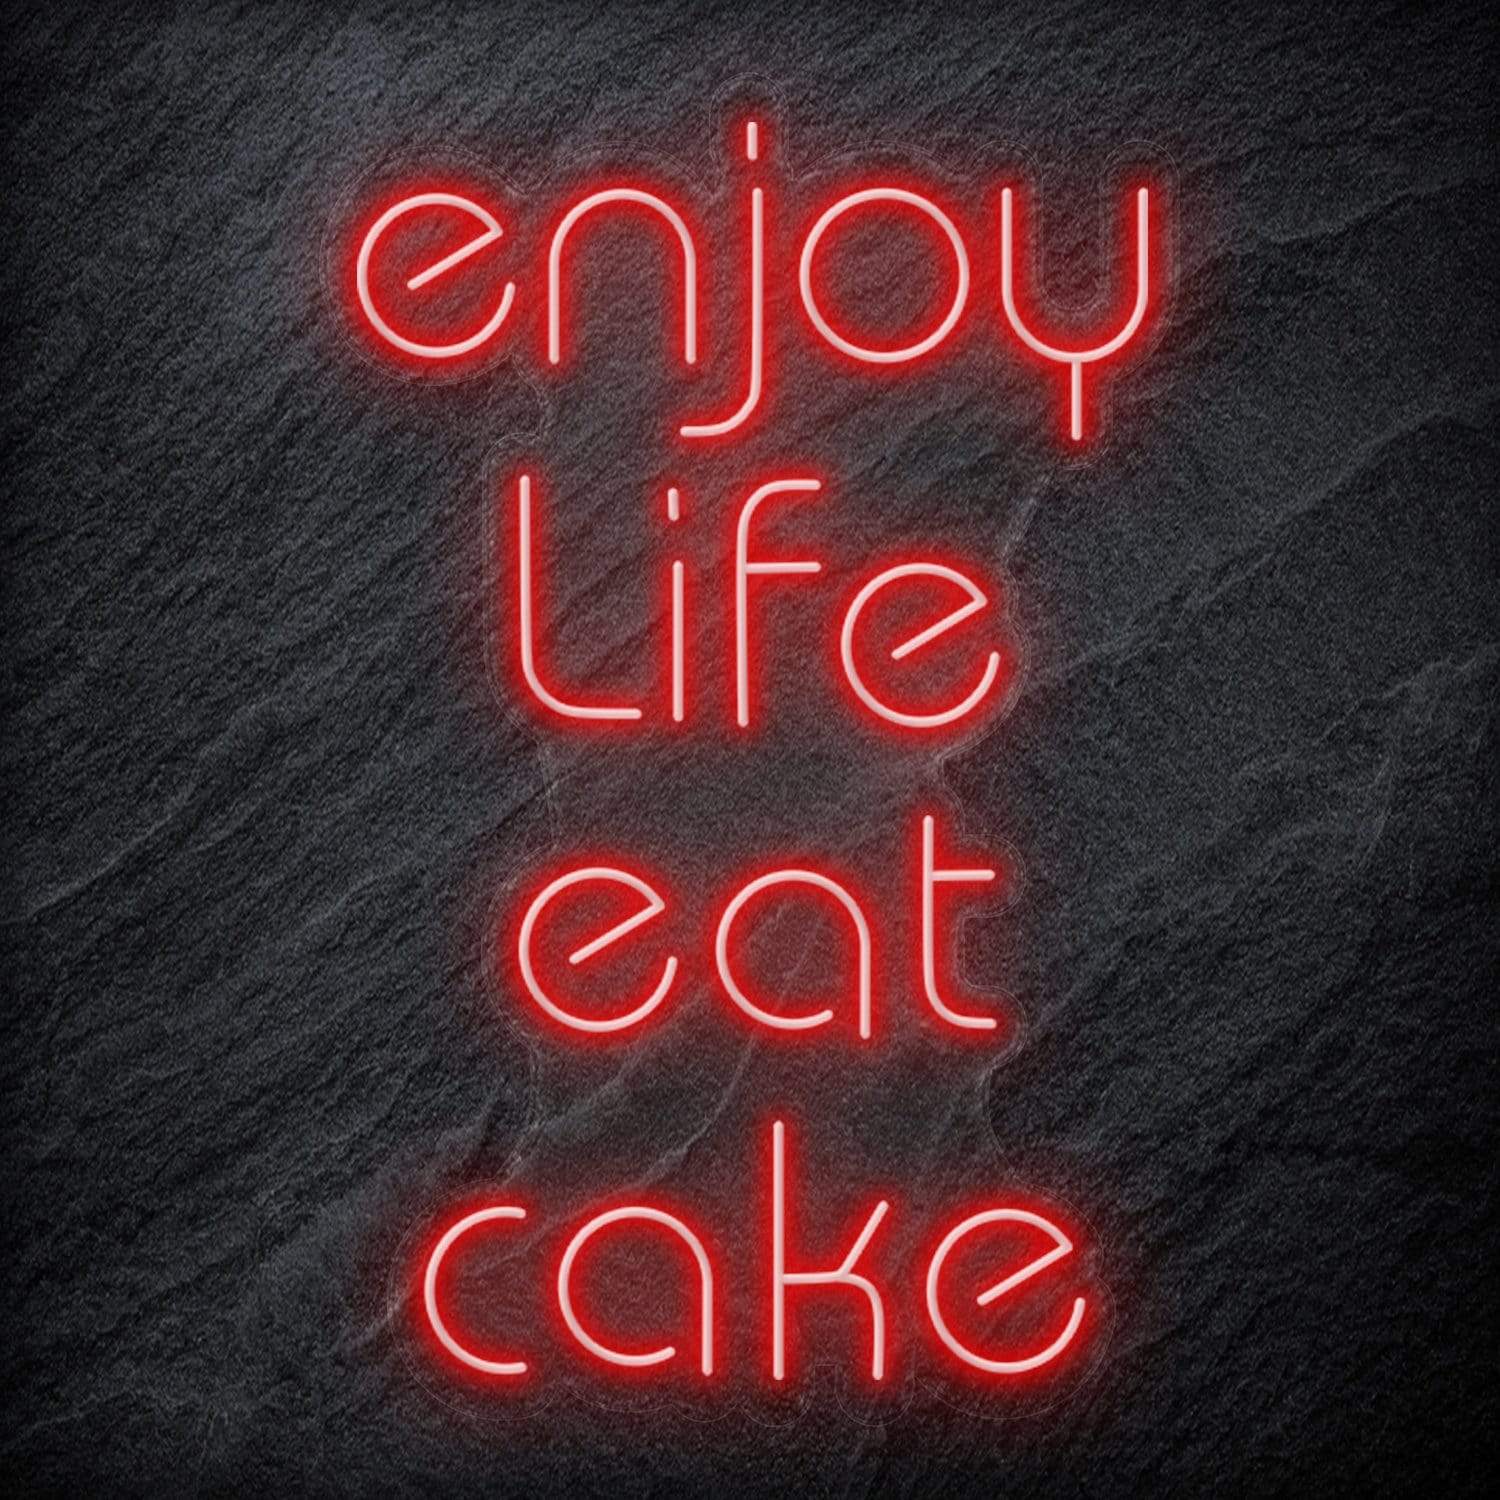 Buy Cake neon sign Online India – acrylicsheetsindia